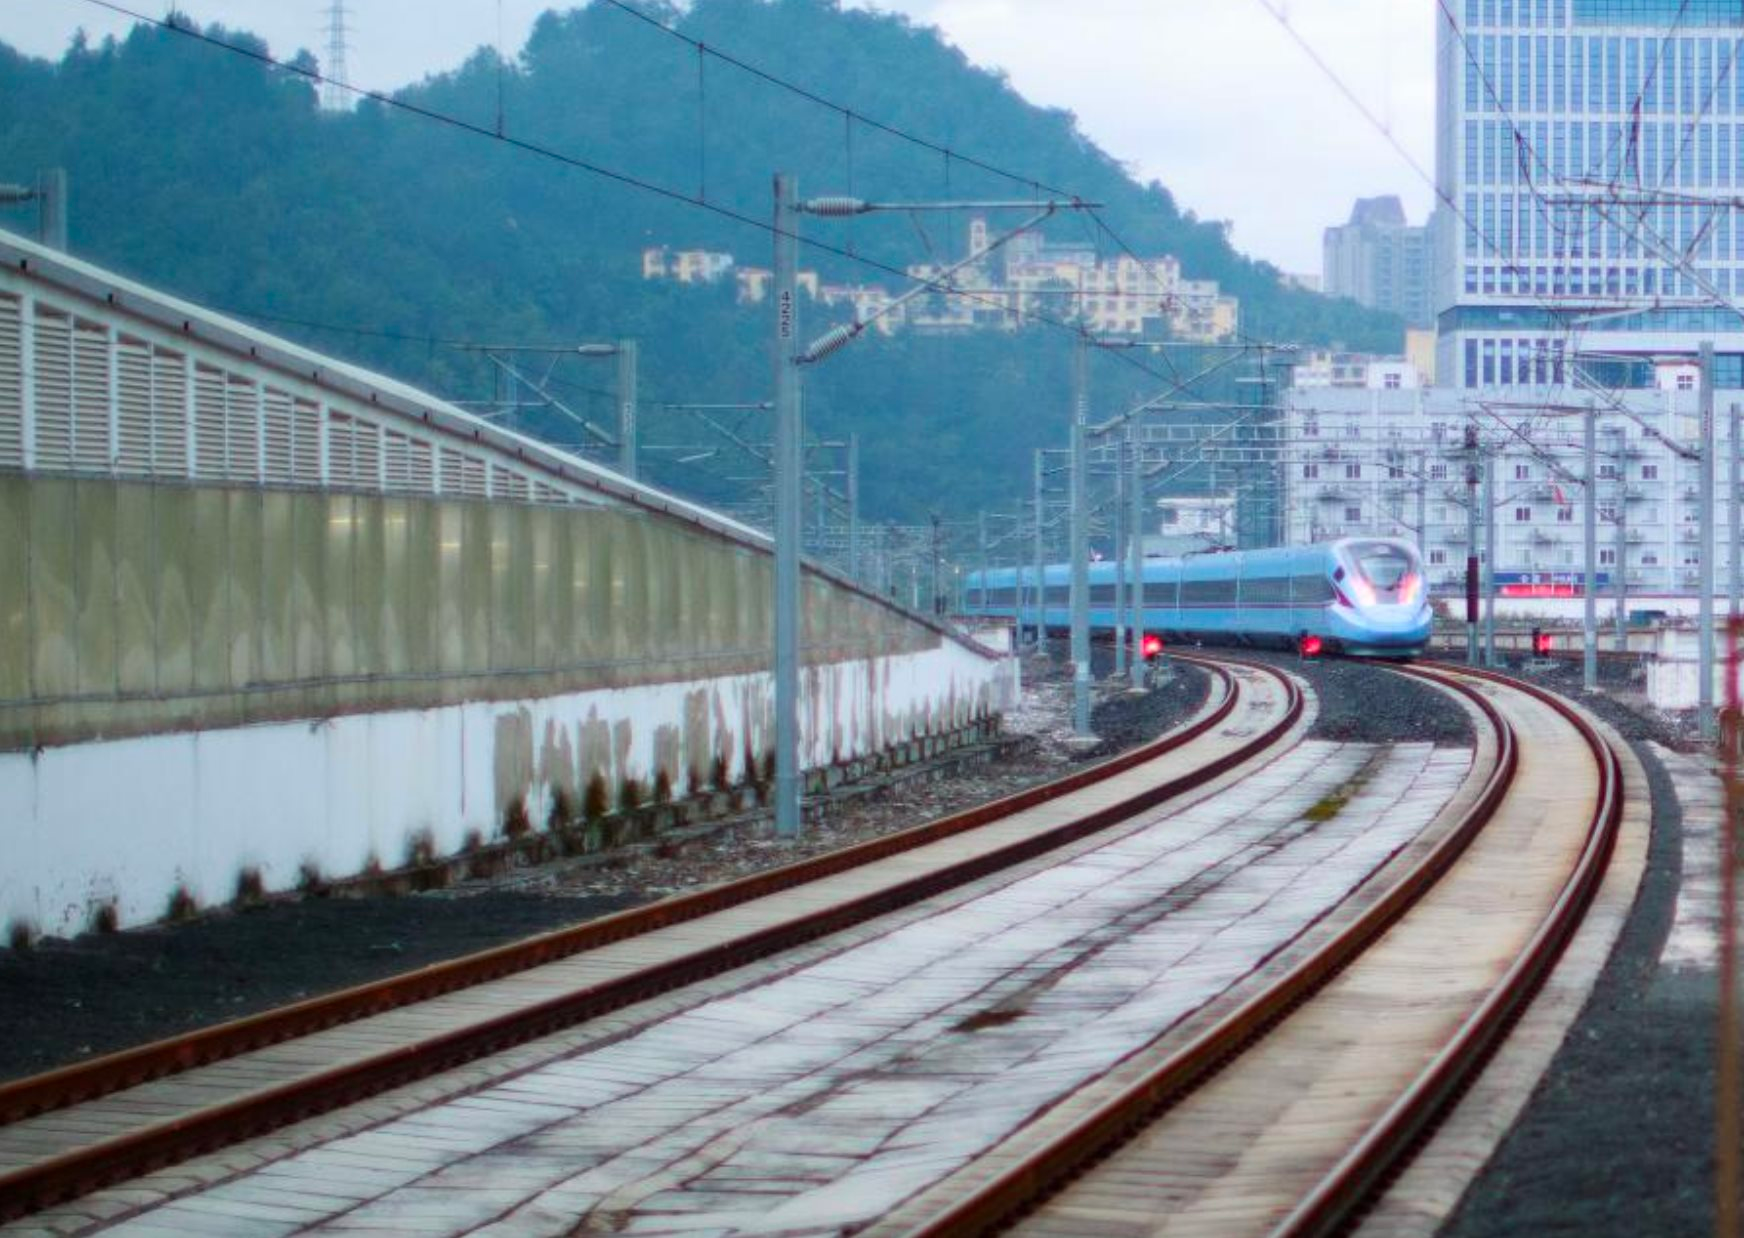 Xây tuyến đường sắt cao tốc xuyên núi, vượt đèo: Tàu hỏa của Trung Quốc chạy 'như bay' với 350 km/h, tổng cộng 62 đường hầm và 86 cây cầu nhưng chỉ mất 6 năm để hoàn thiện